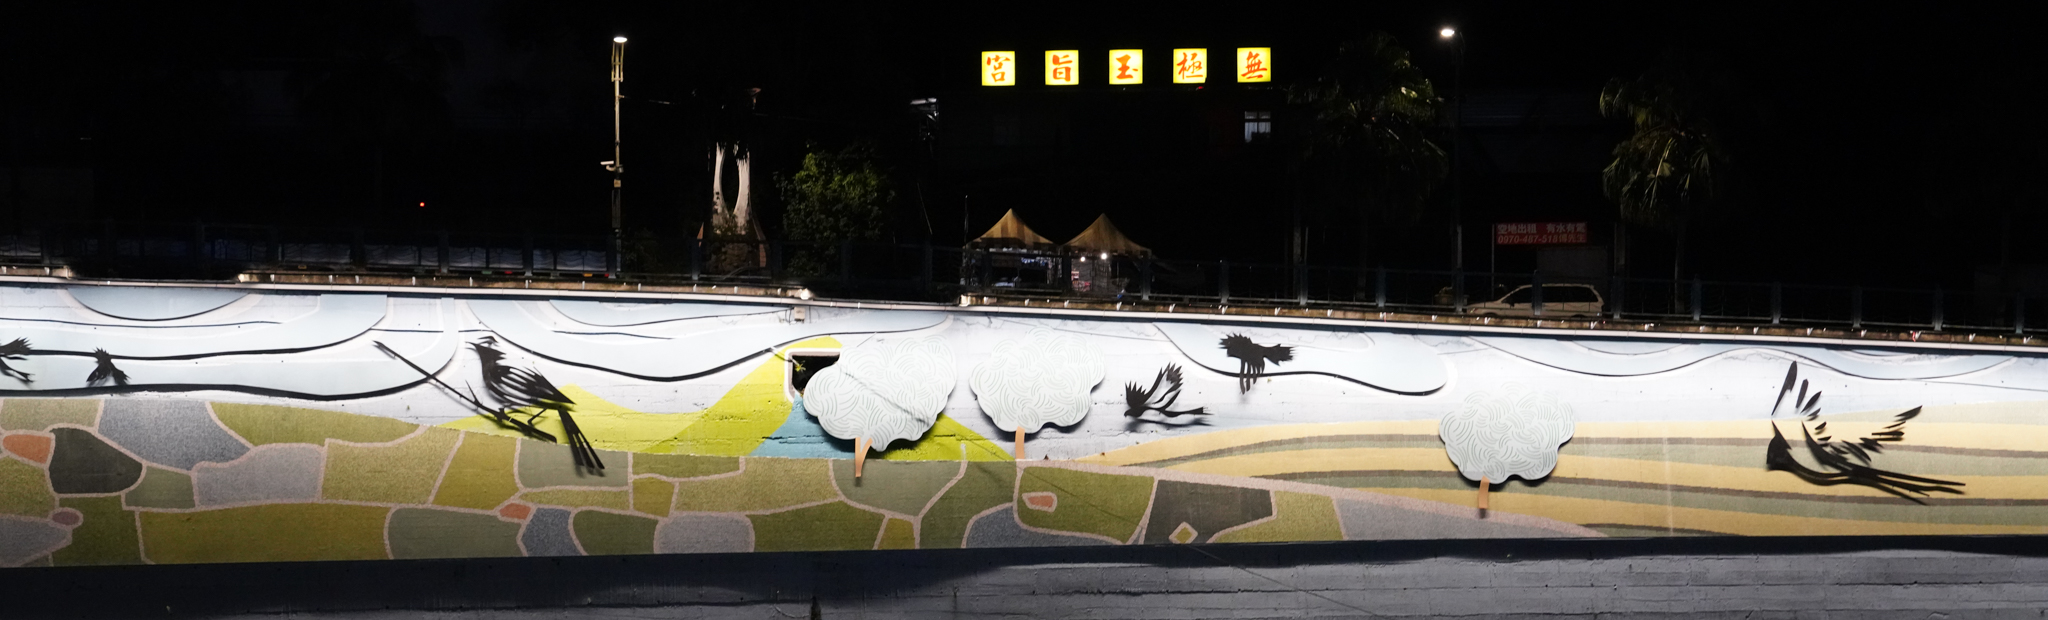 茶博館牆面美化擷取坪林當地風光水色及豐富的生態意象主題(夜景)